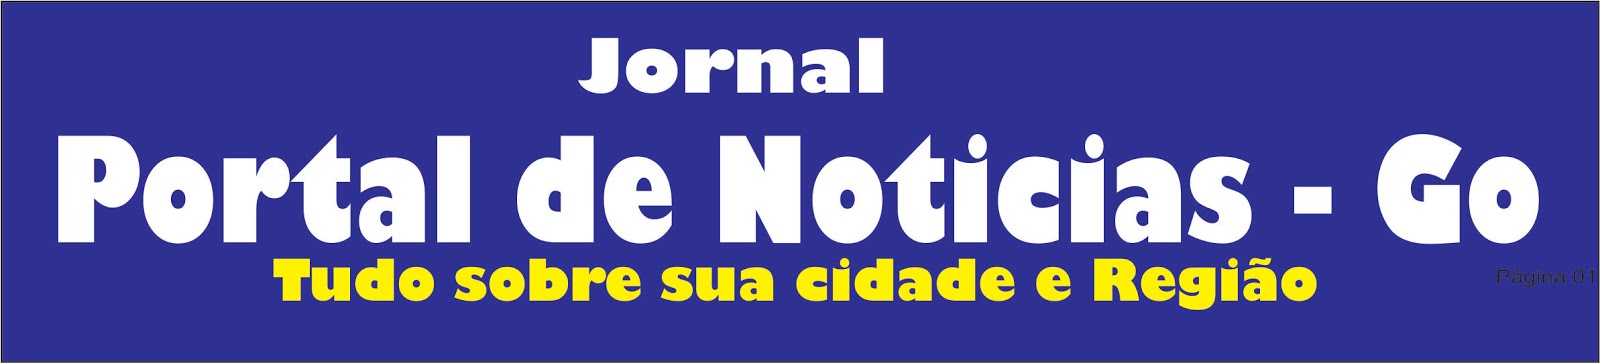 Portal de Noticias - Goiás